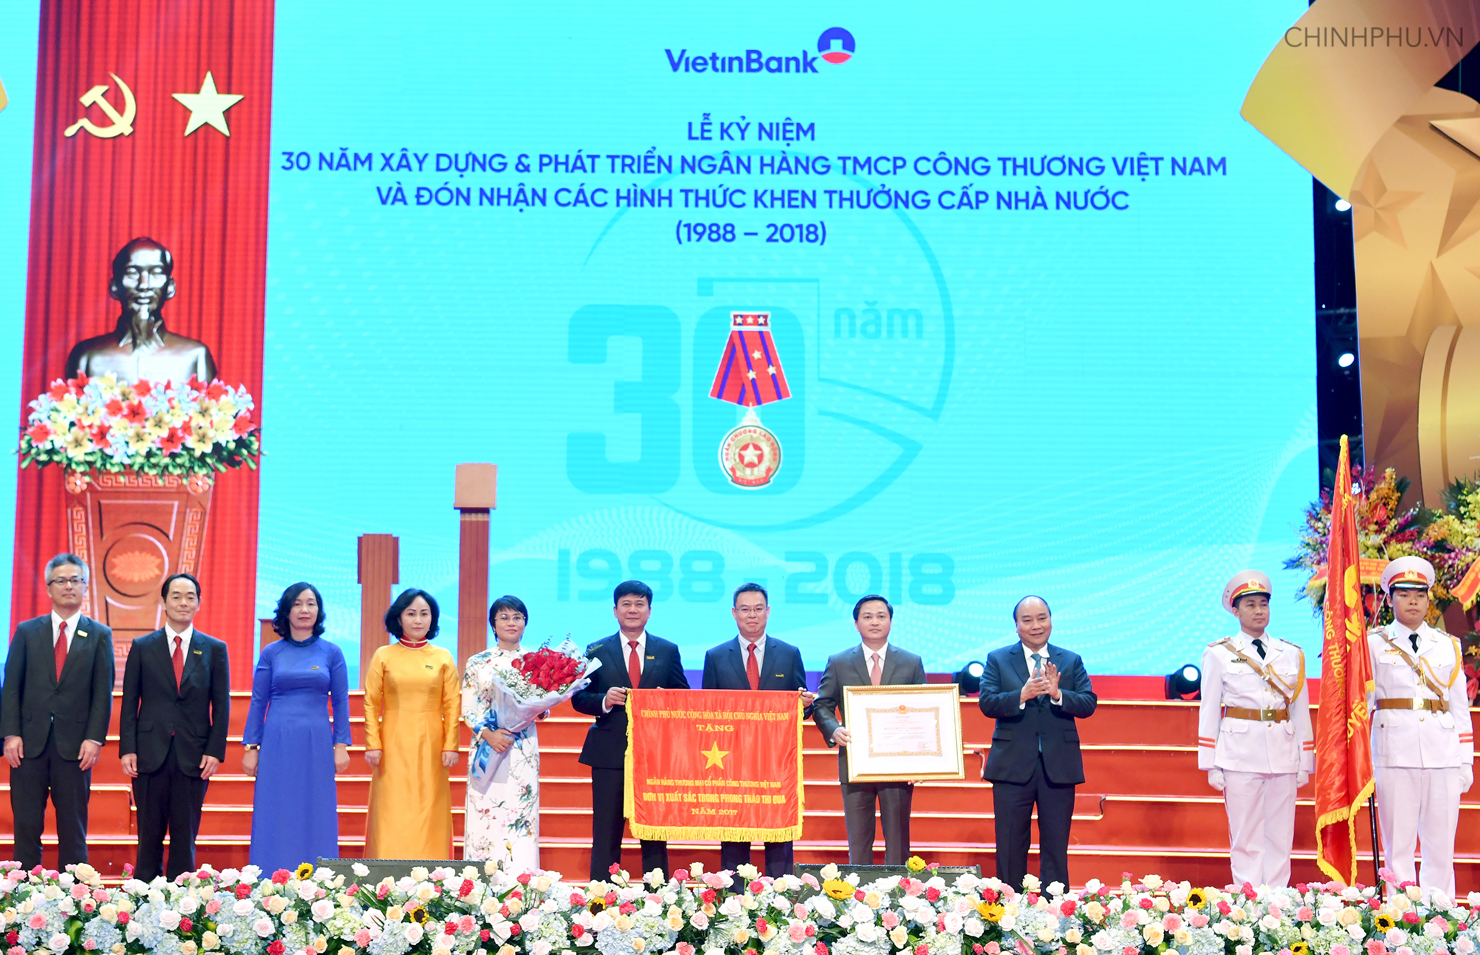 Thay mặt lãnh đạo Đảng, Nhà nước, Thủ tướng đã trao Huân chương lao động Hạng Nhất, Cờ thi đua của Chính phủ cho Vietinbank.